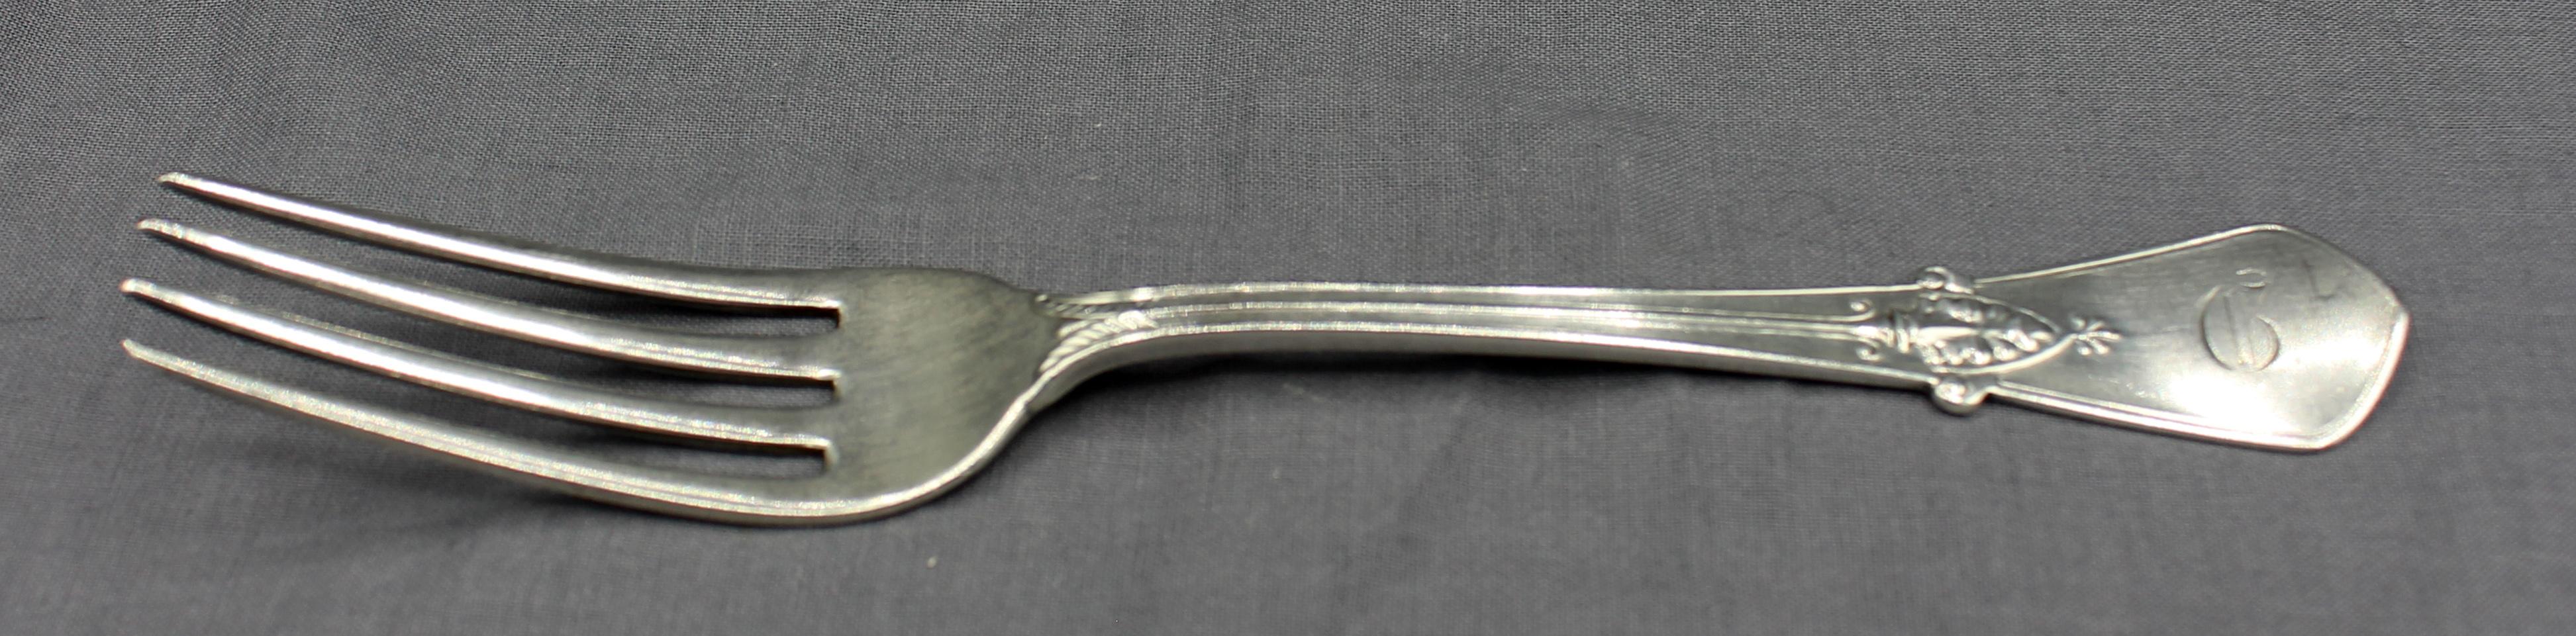 Antique sterling silver set of 4 forks 